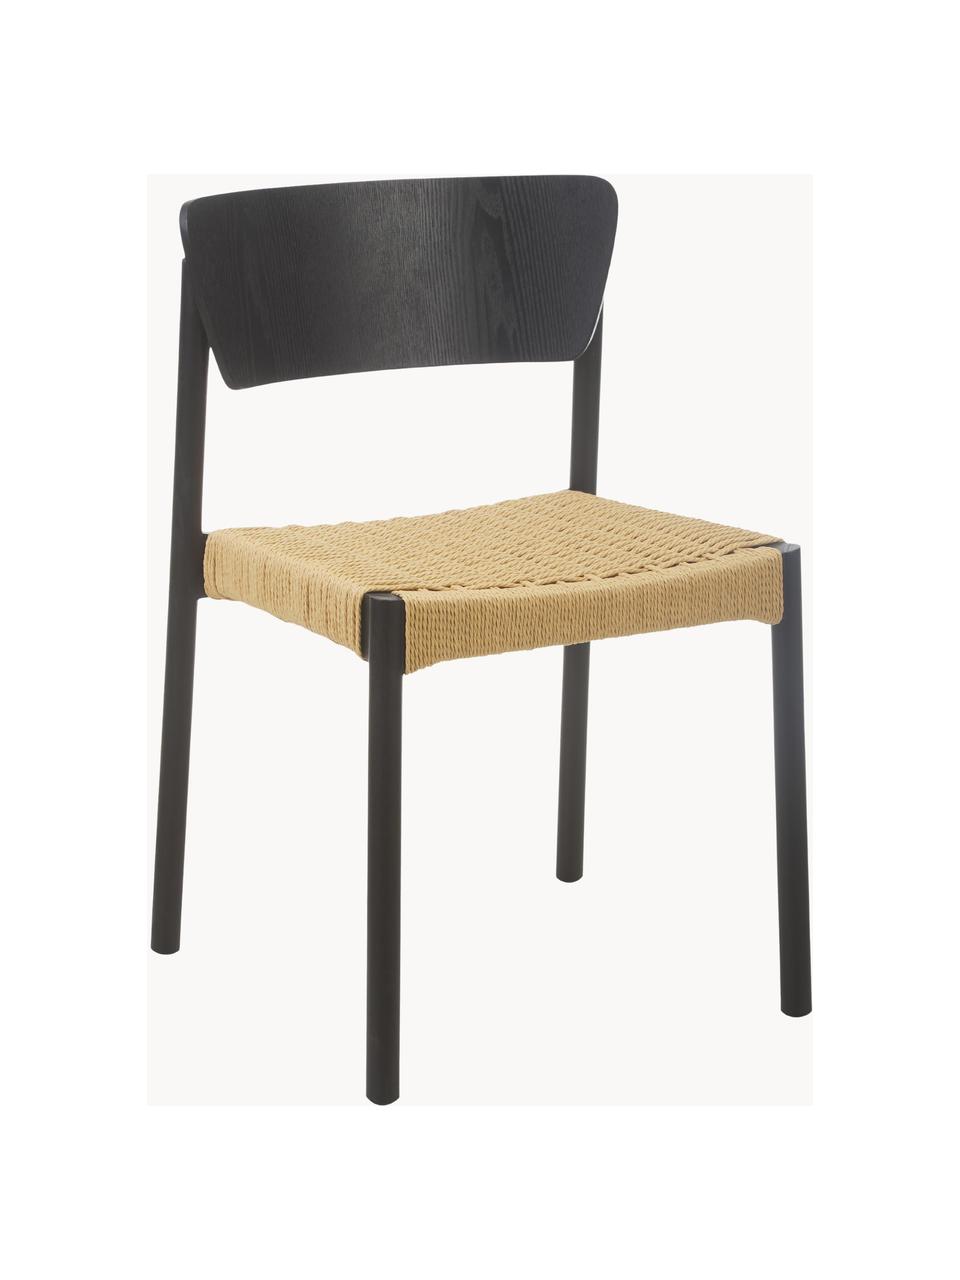 Holzstühle Danny mit Rattan-Sitzfläche, 2 Stück, Gestell: Massives Buchenholz, Sitzfläche: Papierrattan, Rückenlehne: Schichtholz mit Eschenfur, Schwarz, Beige, B 52 x T 51 cm